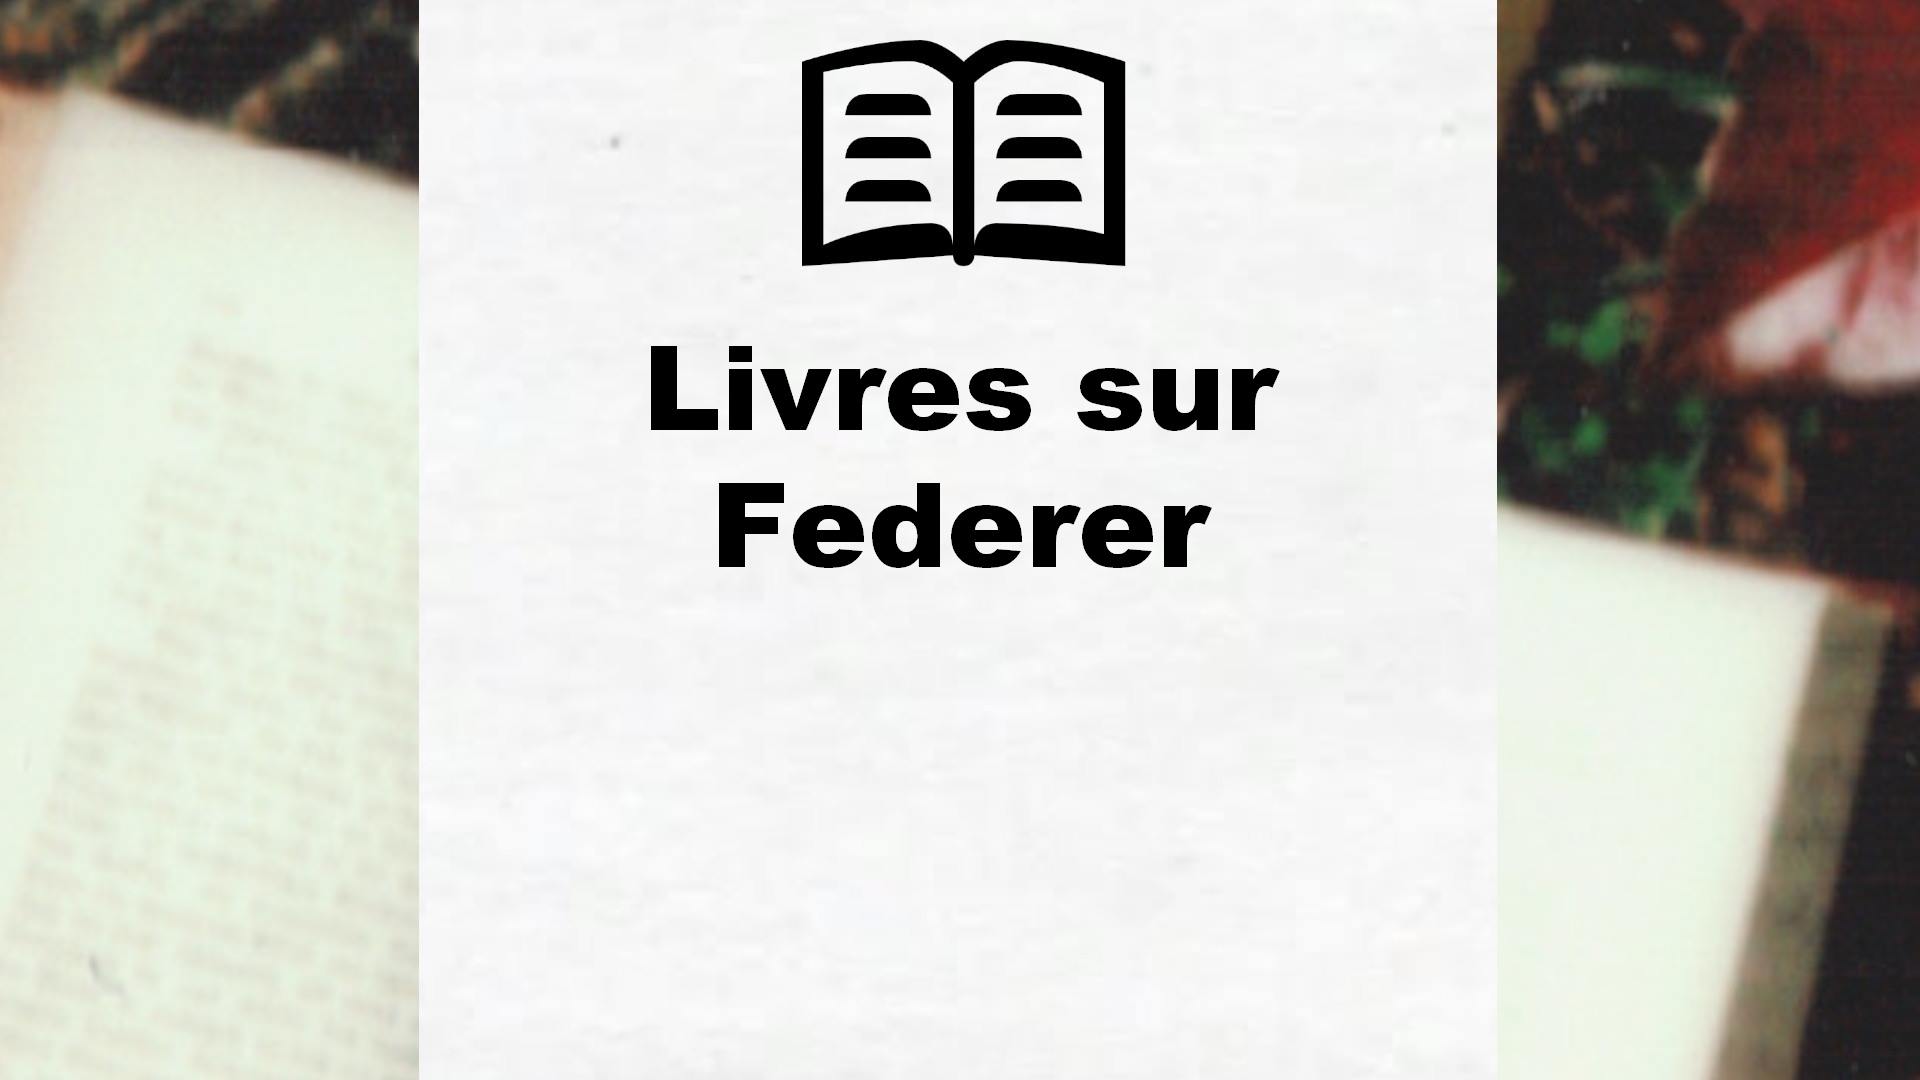 Livres sur Federer